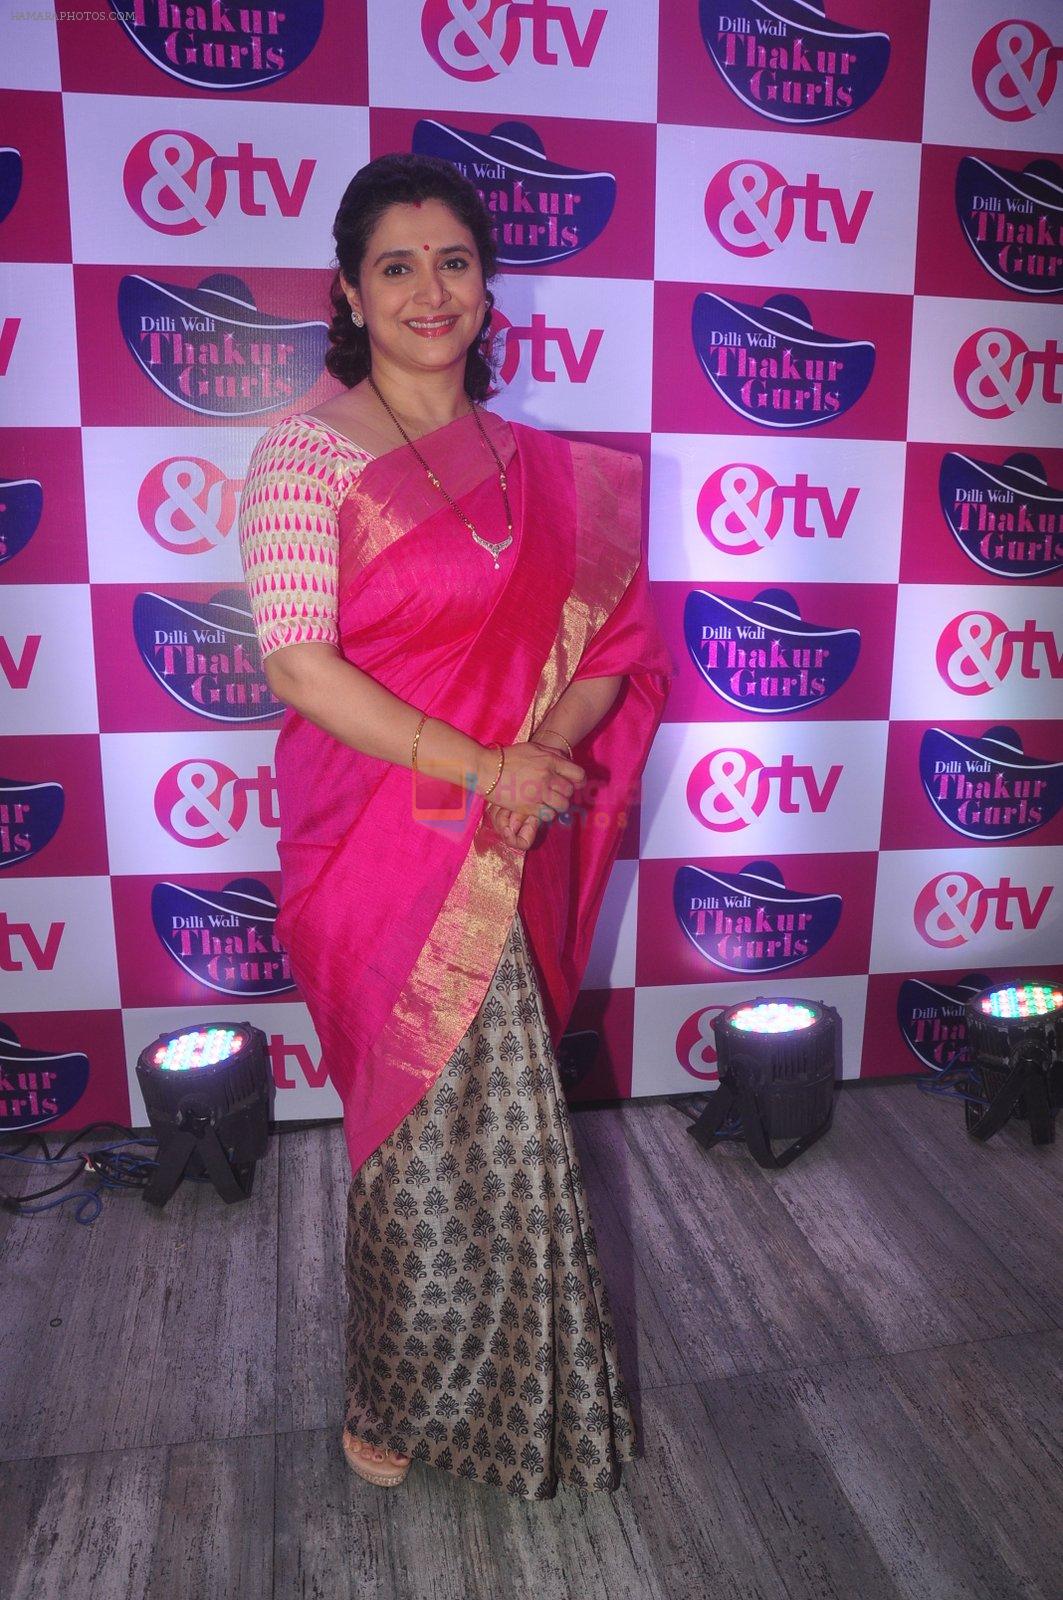 Supriya Pilgaonkar at & TV Dilli Wali Thakur Gurls launch in Mumbai on 25th March 2015